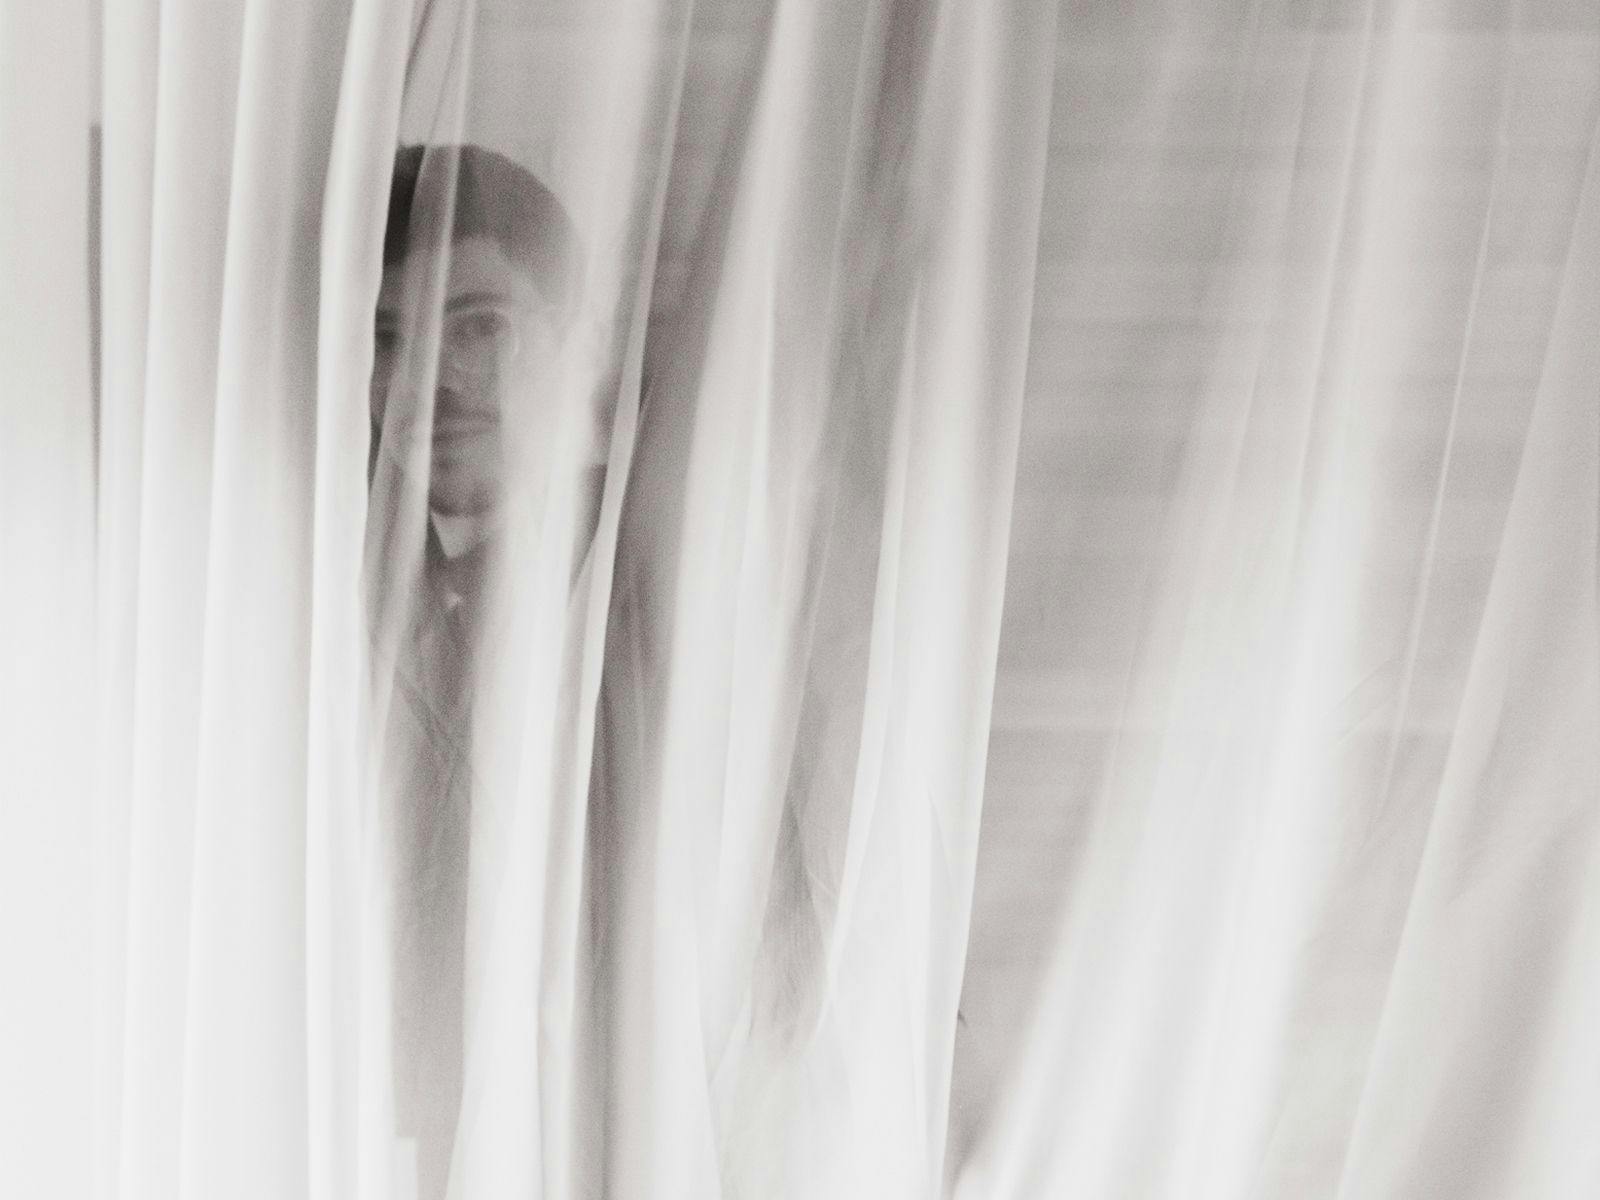 Fabian B hides behind a semi-opaque curtain.